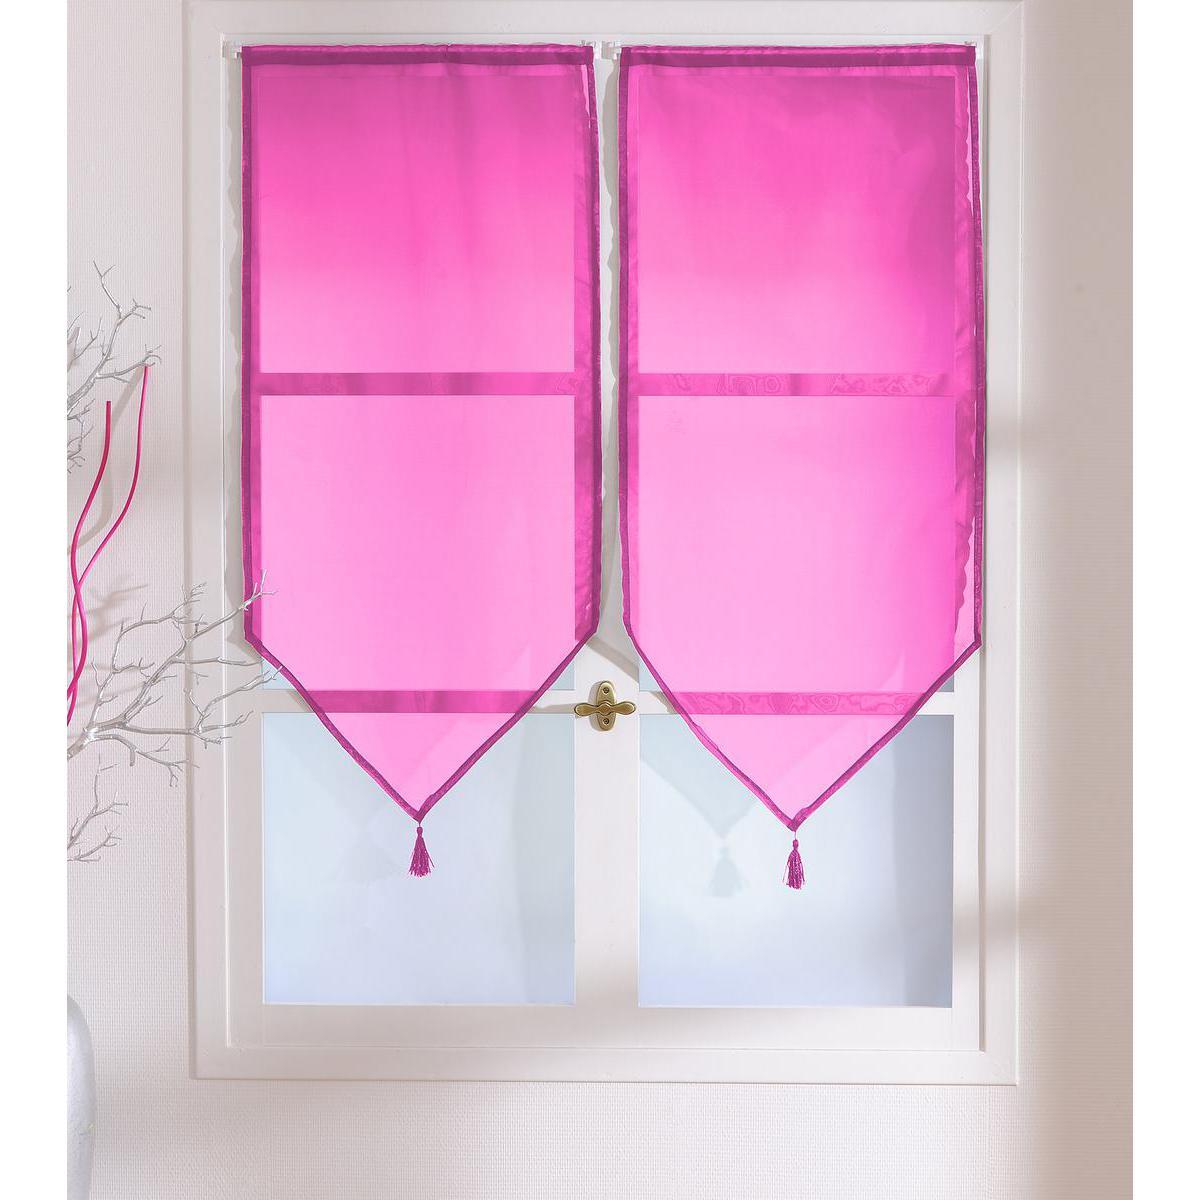 Paire de vitrages - 100% polyester - 60 x 90 cm - Rose